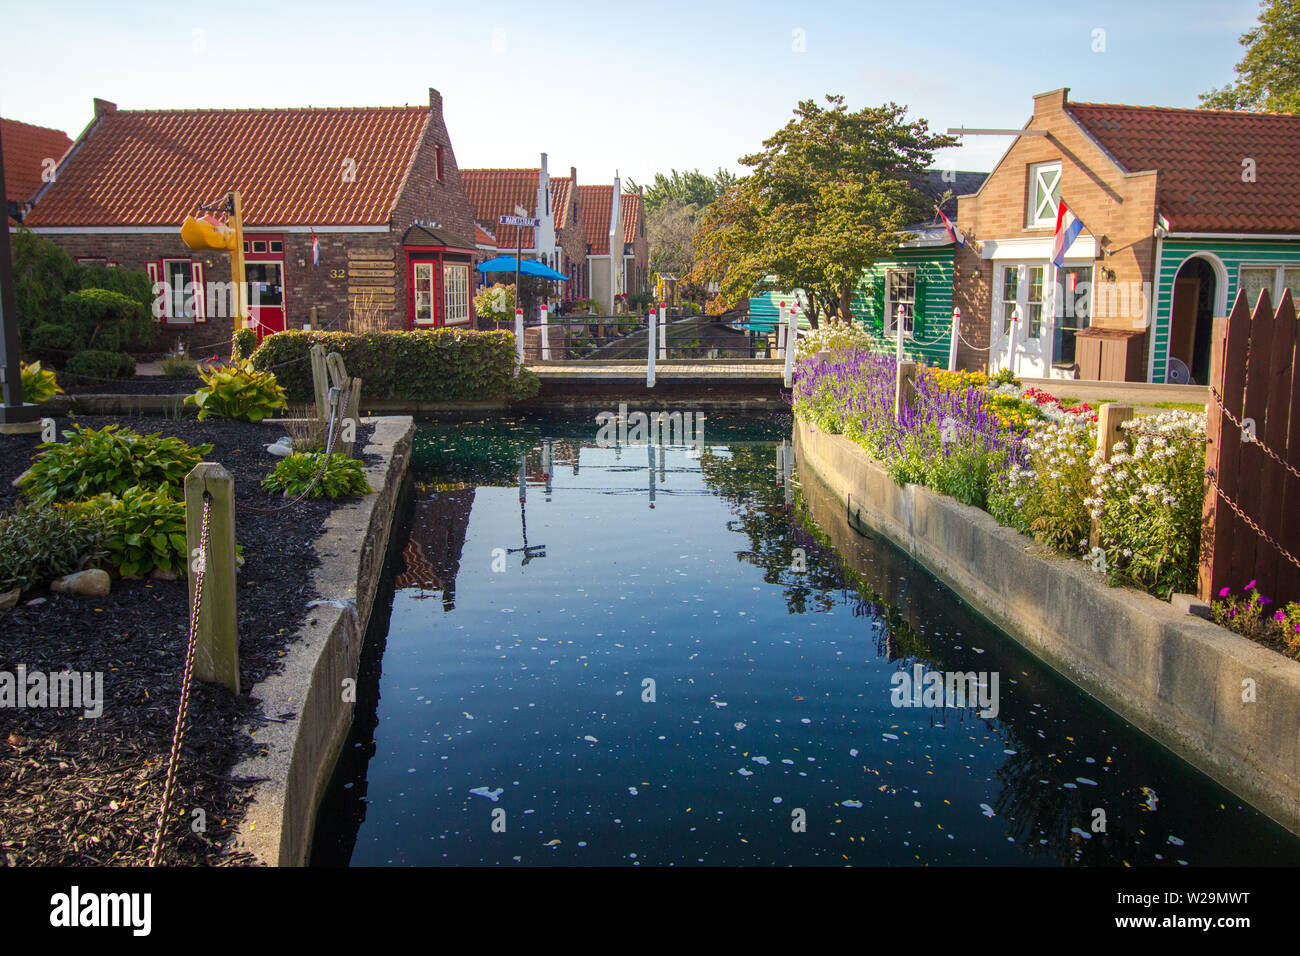 Holland, Michigan, USA - 18. September 2018: Nelis Dutch Village street scene mit Canal. Das Dorf verfügt über Souvenirläden, Fahrgeschäfte und Attraktionen. Stockfoto